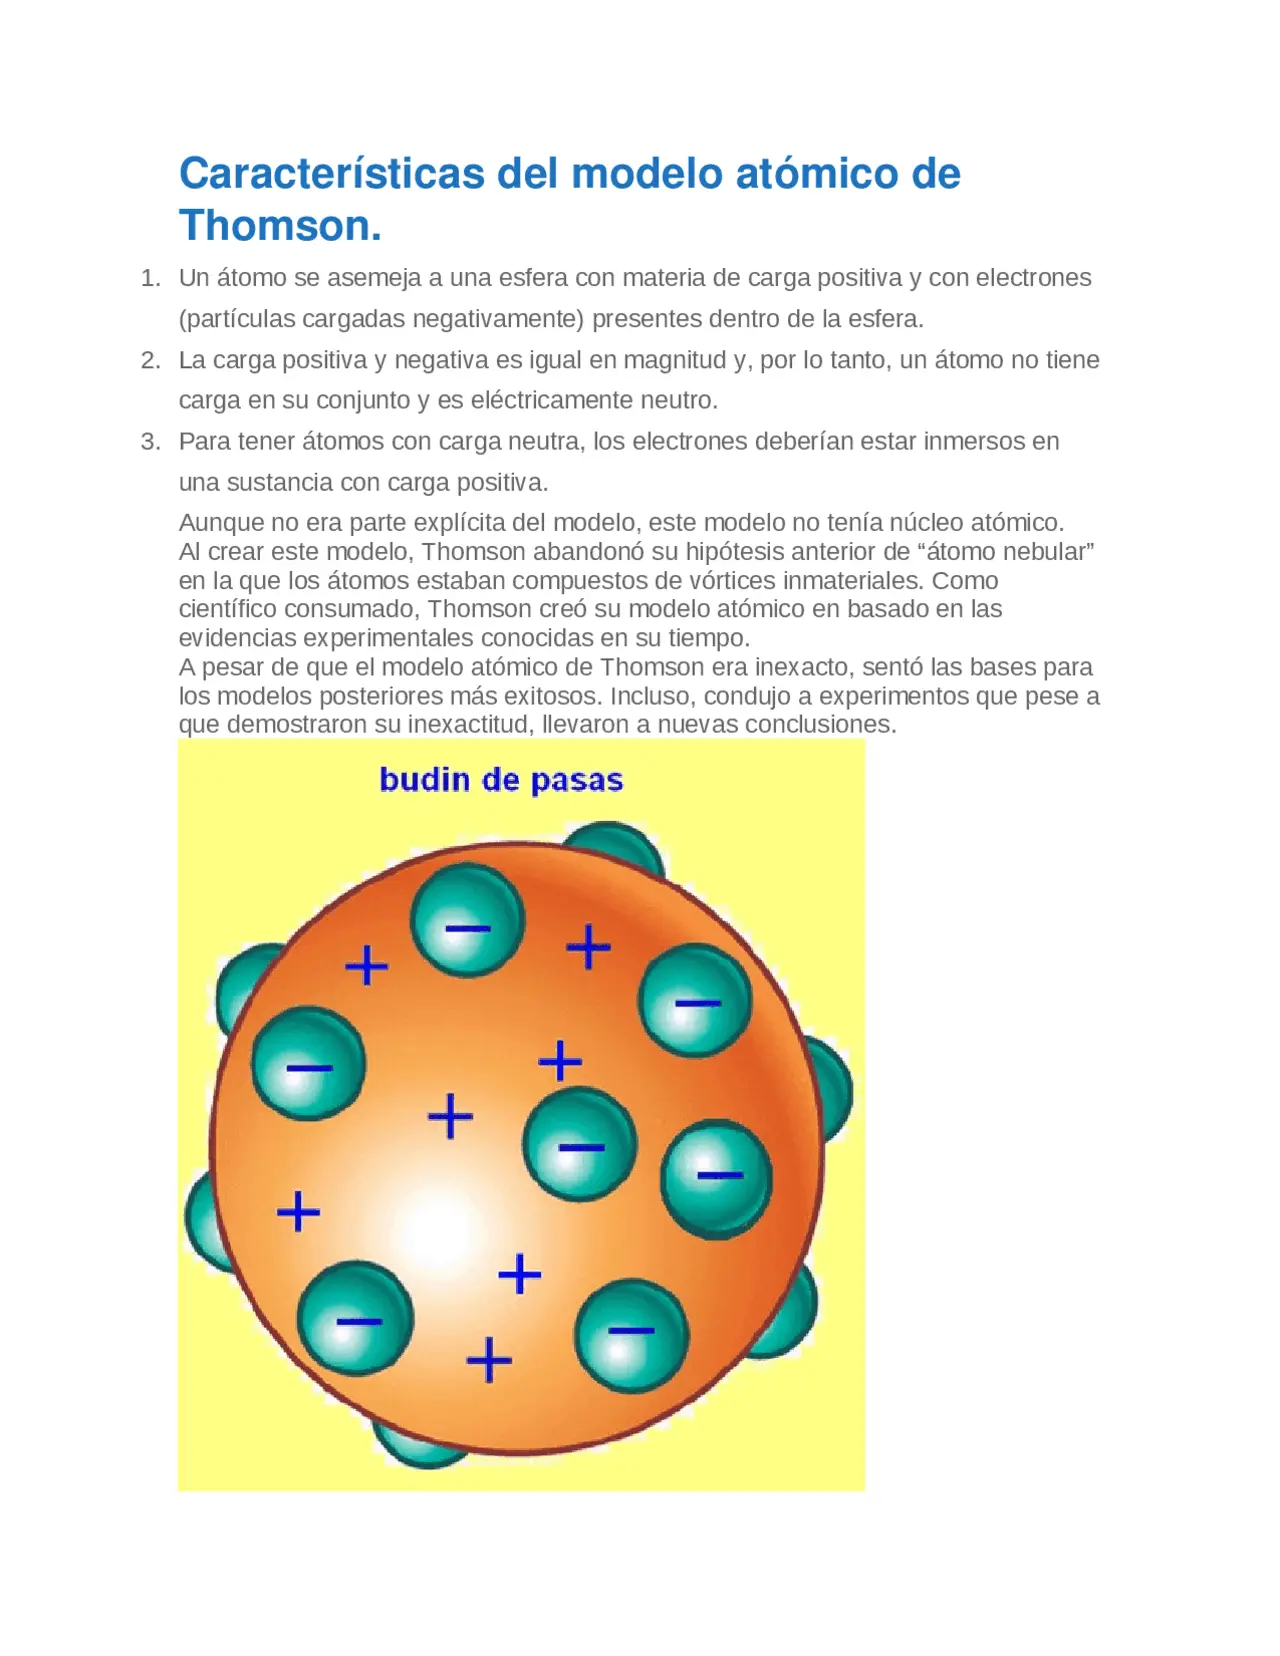 modelo atomico de thomson resumen - Cuáles son los 3 experimentos de Thomson